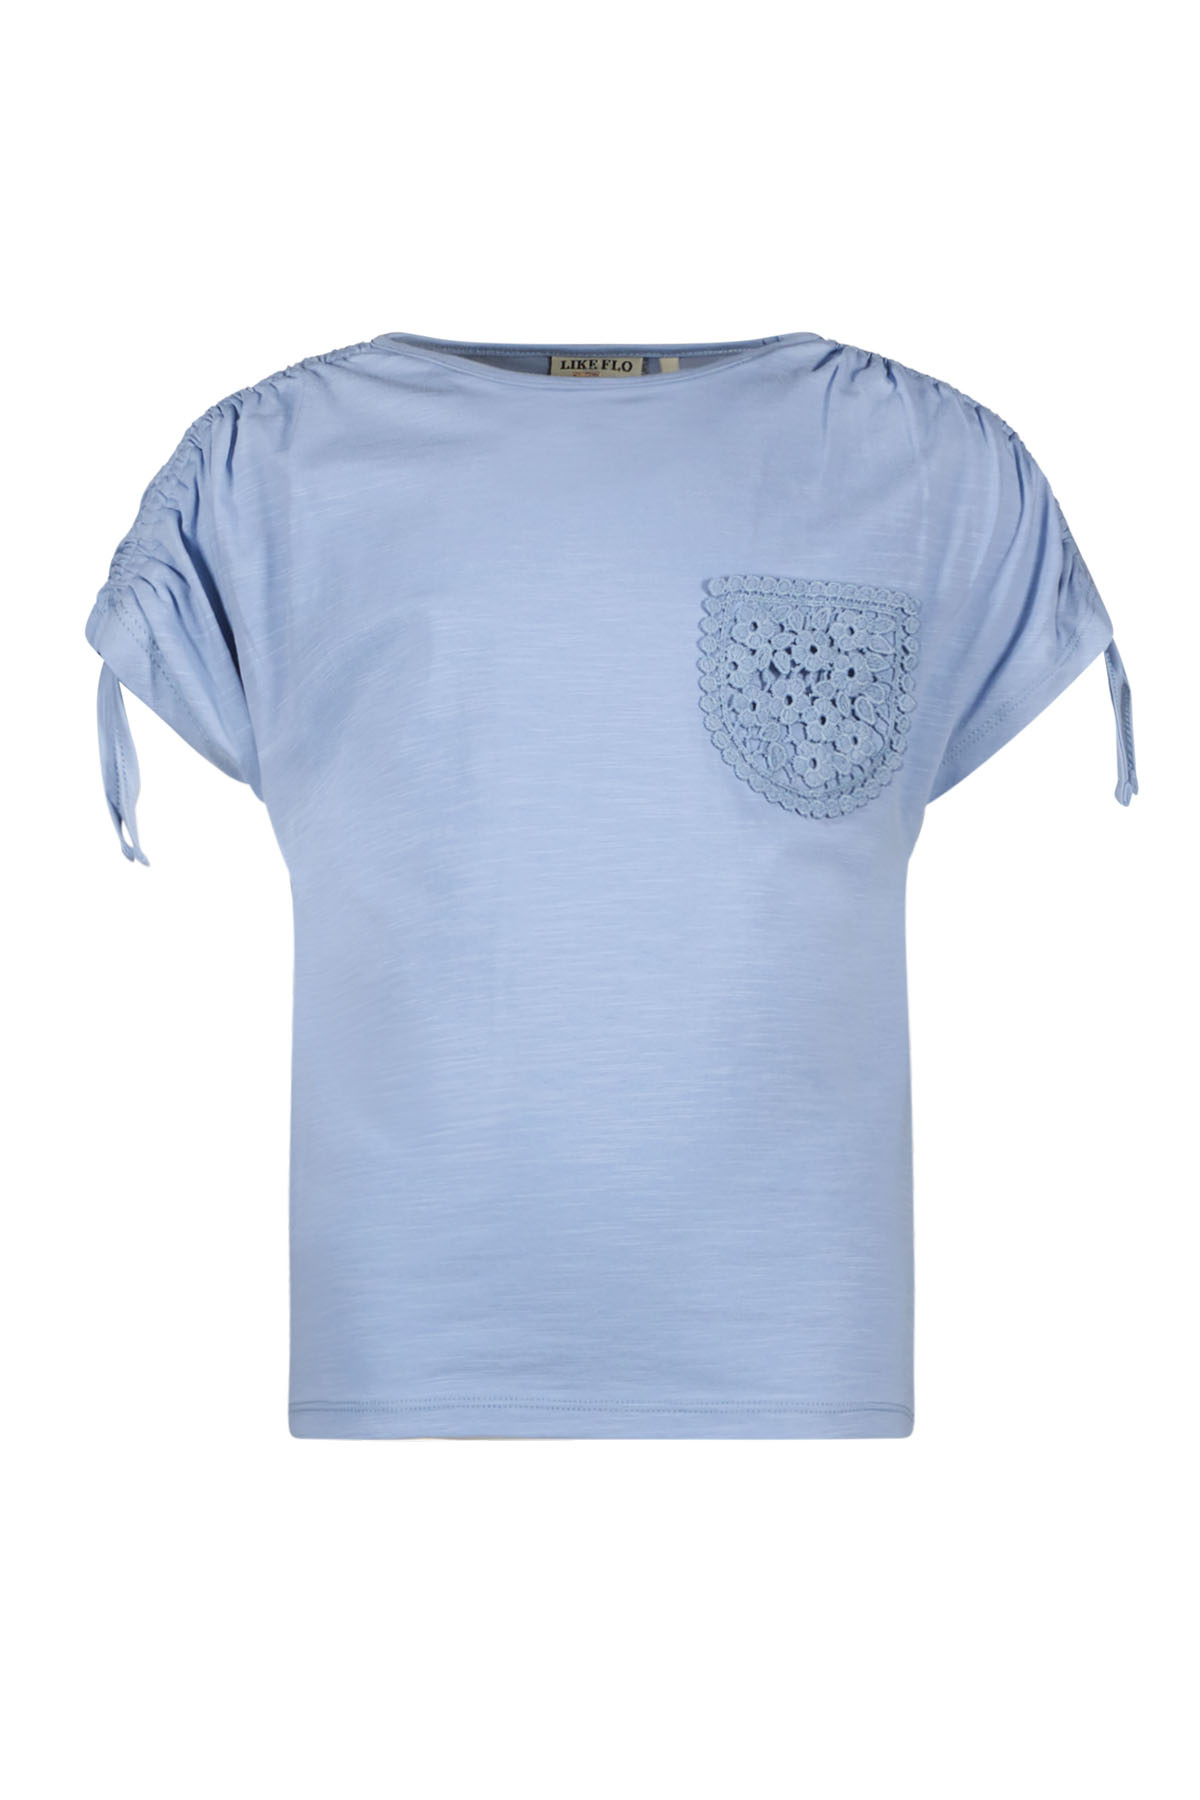 Like Flo F402-5405 Meisjes T-shirt - Ice blue - Maat 116